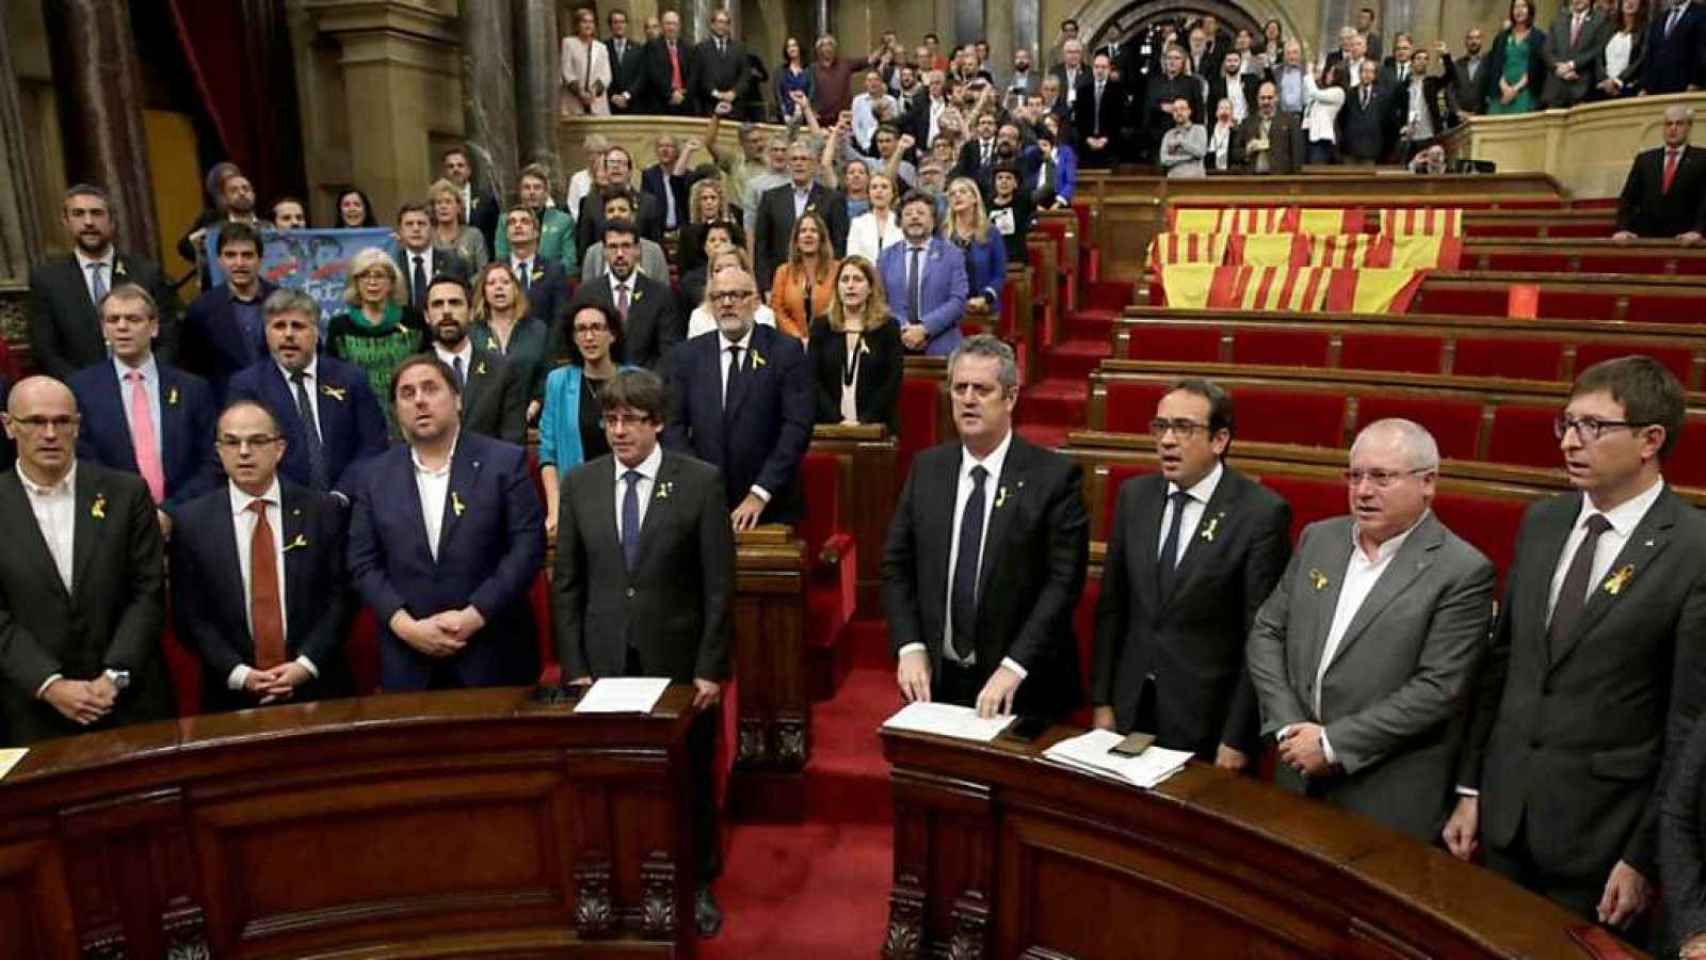 Declaración unilateral de independencia en el Parlamento catalán el 27 de octubre de 2017.